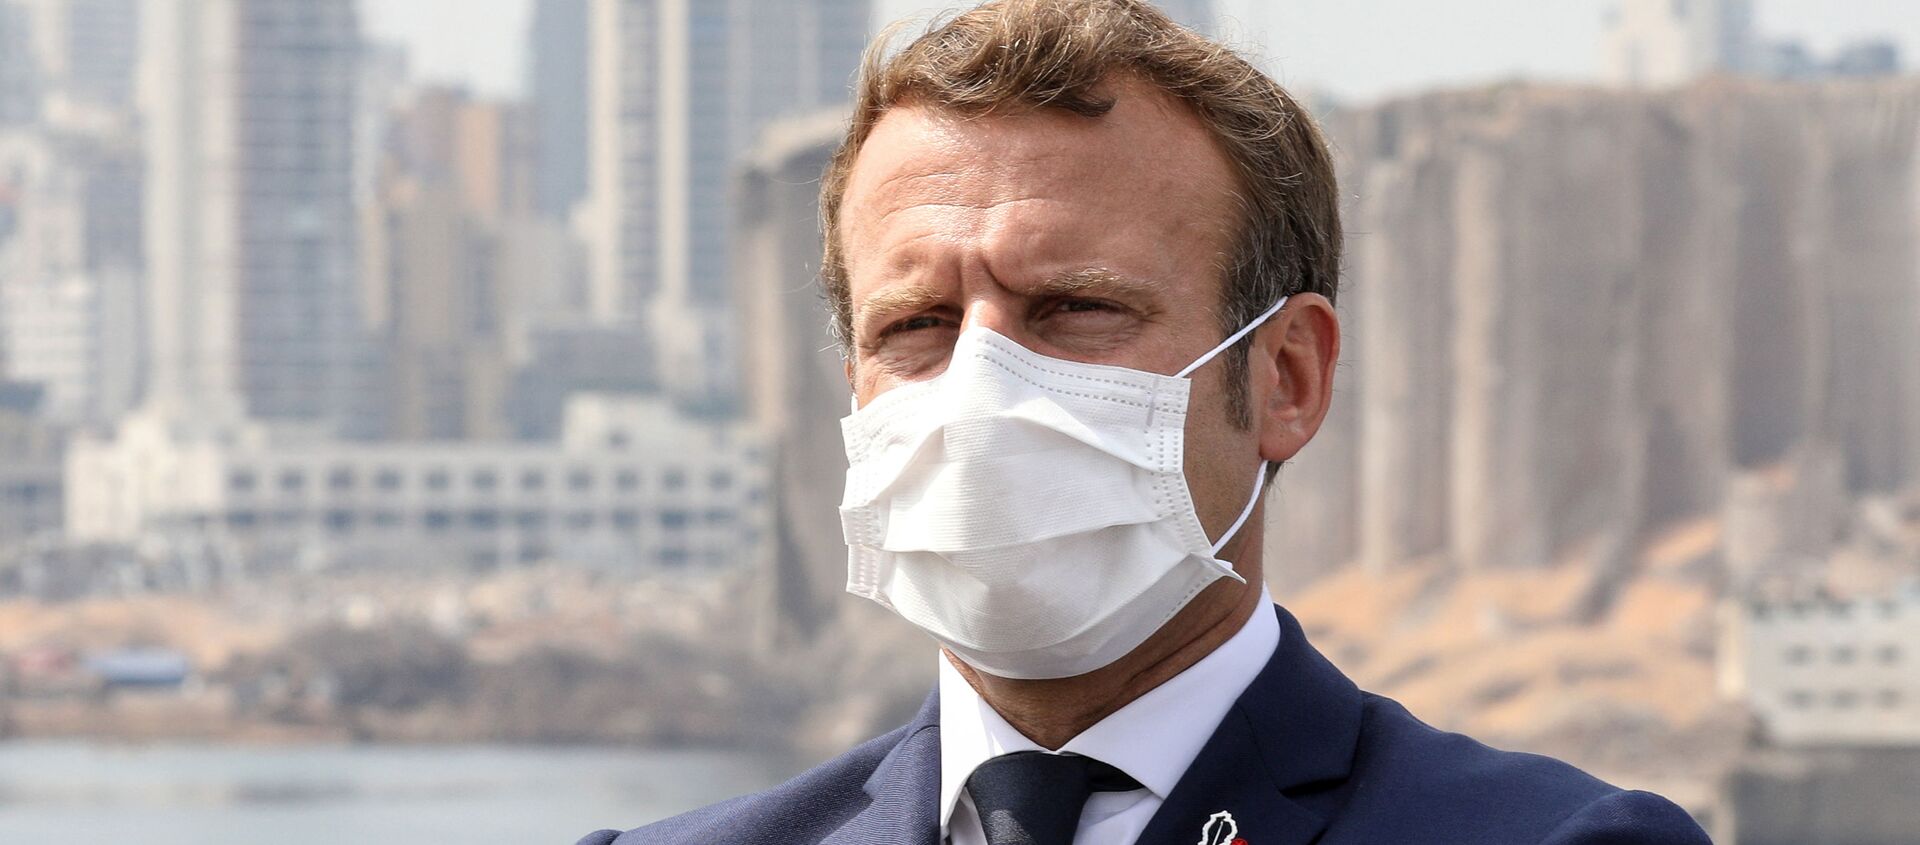 Emmanuel Macron à Beyrouth, le 1er septembre 2020 - Sputnik Afrique, 1920, 29.09.2020